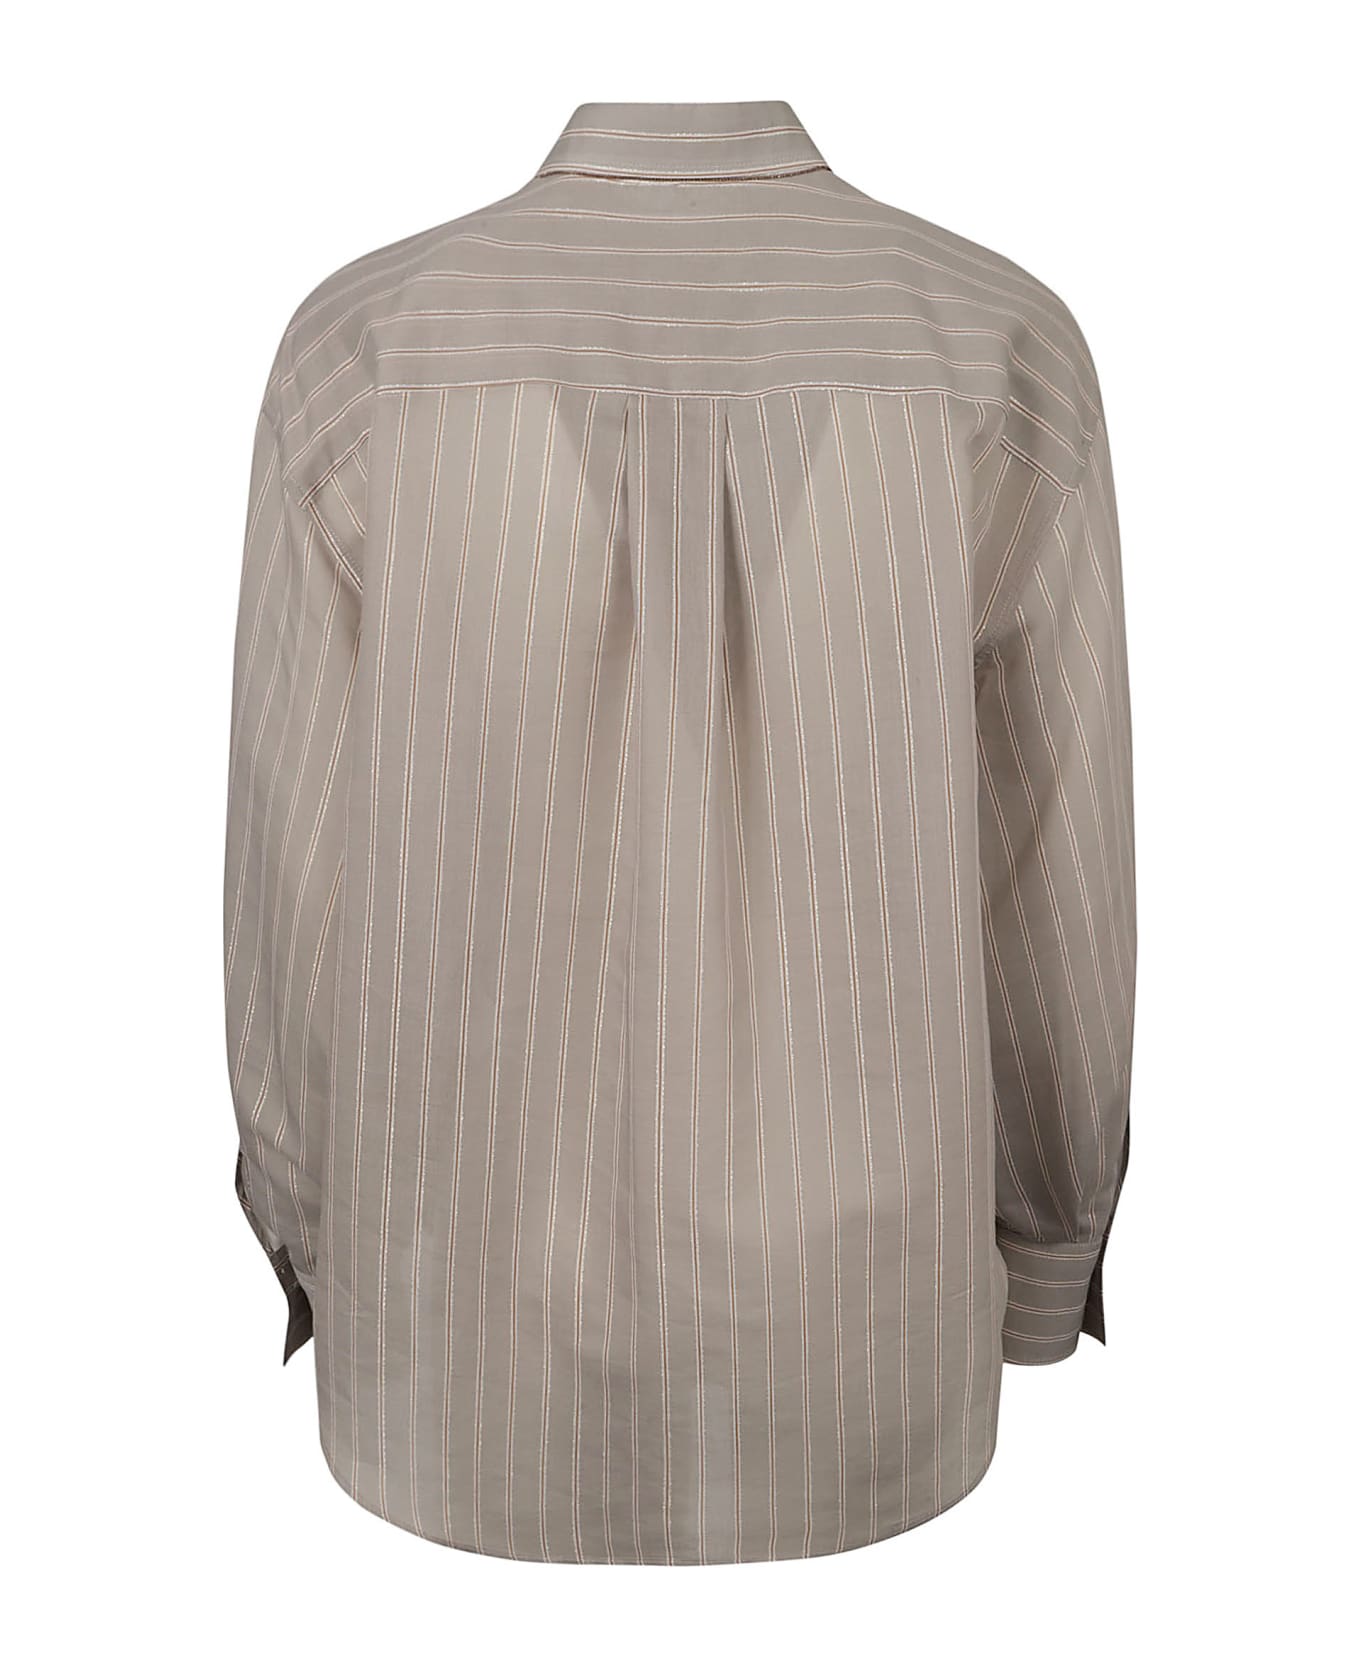 Brunello Cucinelli Pinstripe Shirt - Grey/White シャツ